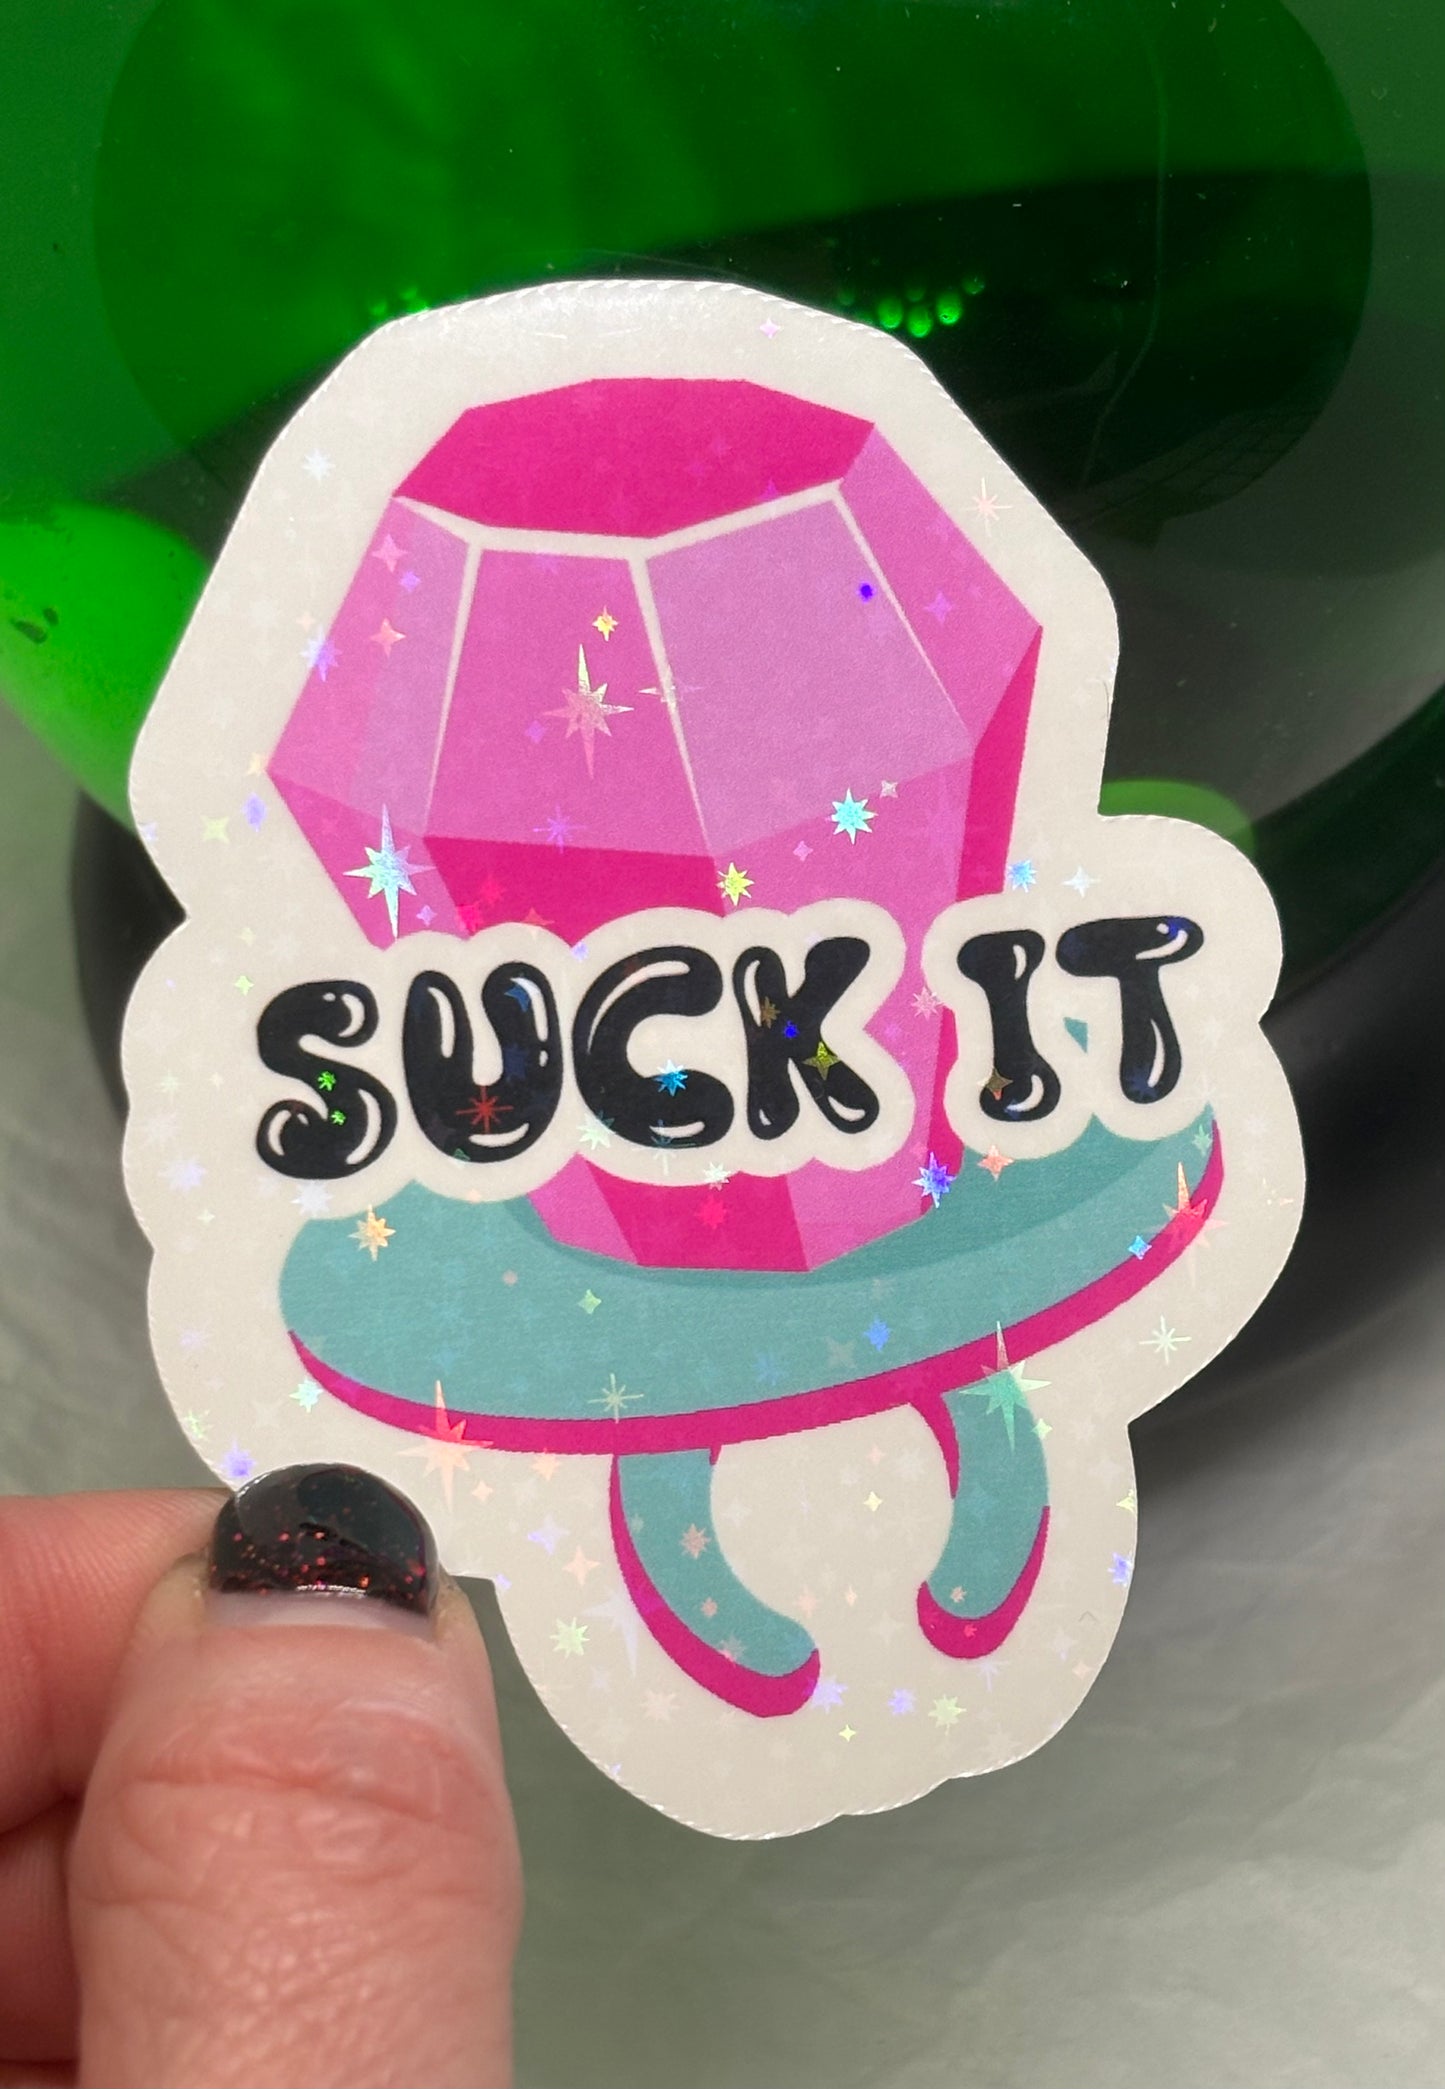 Suck It Sticker